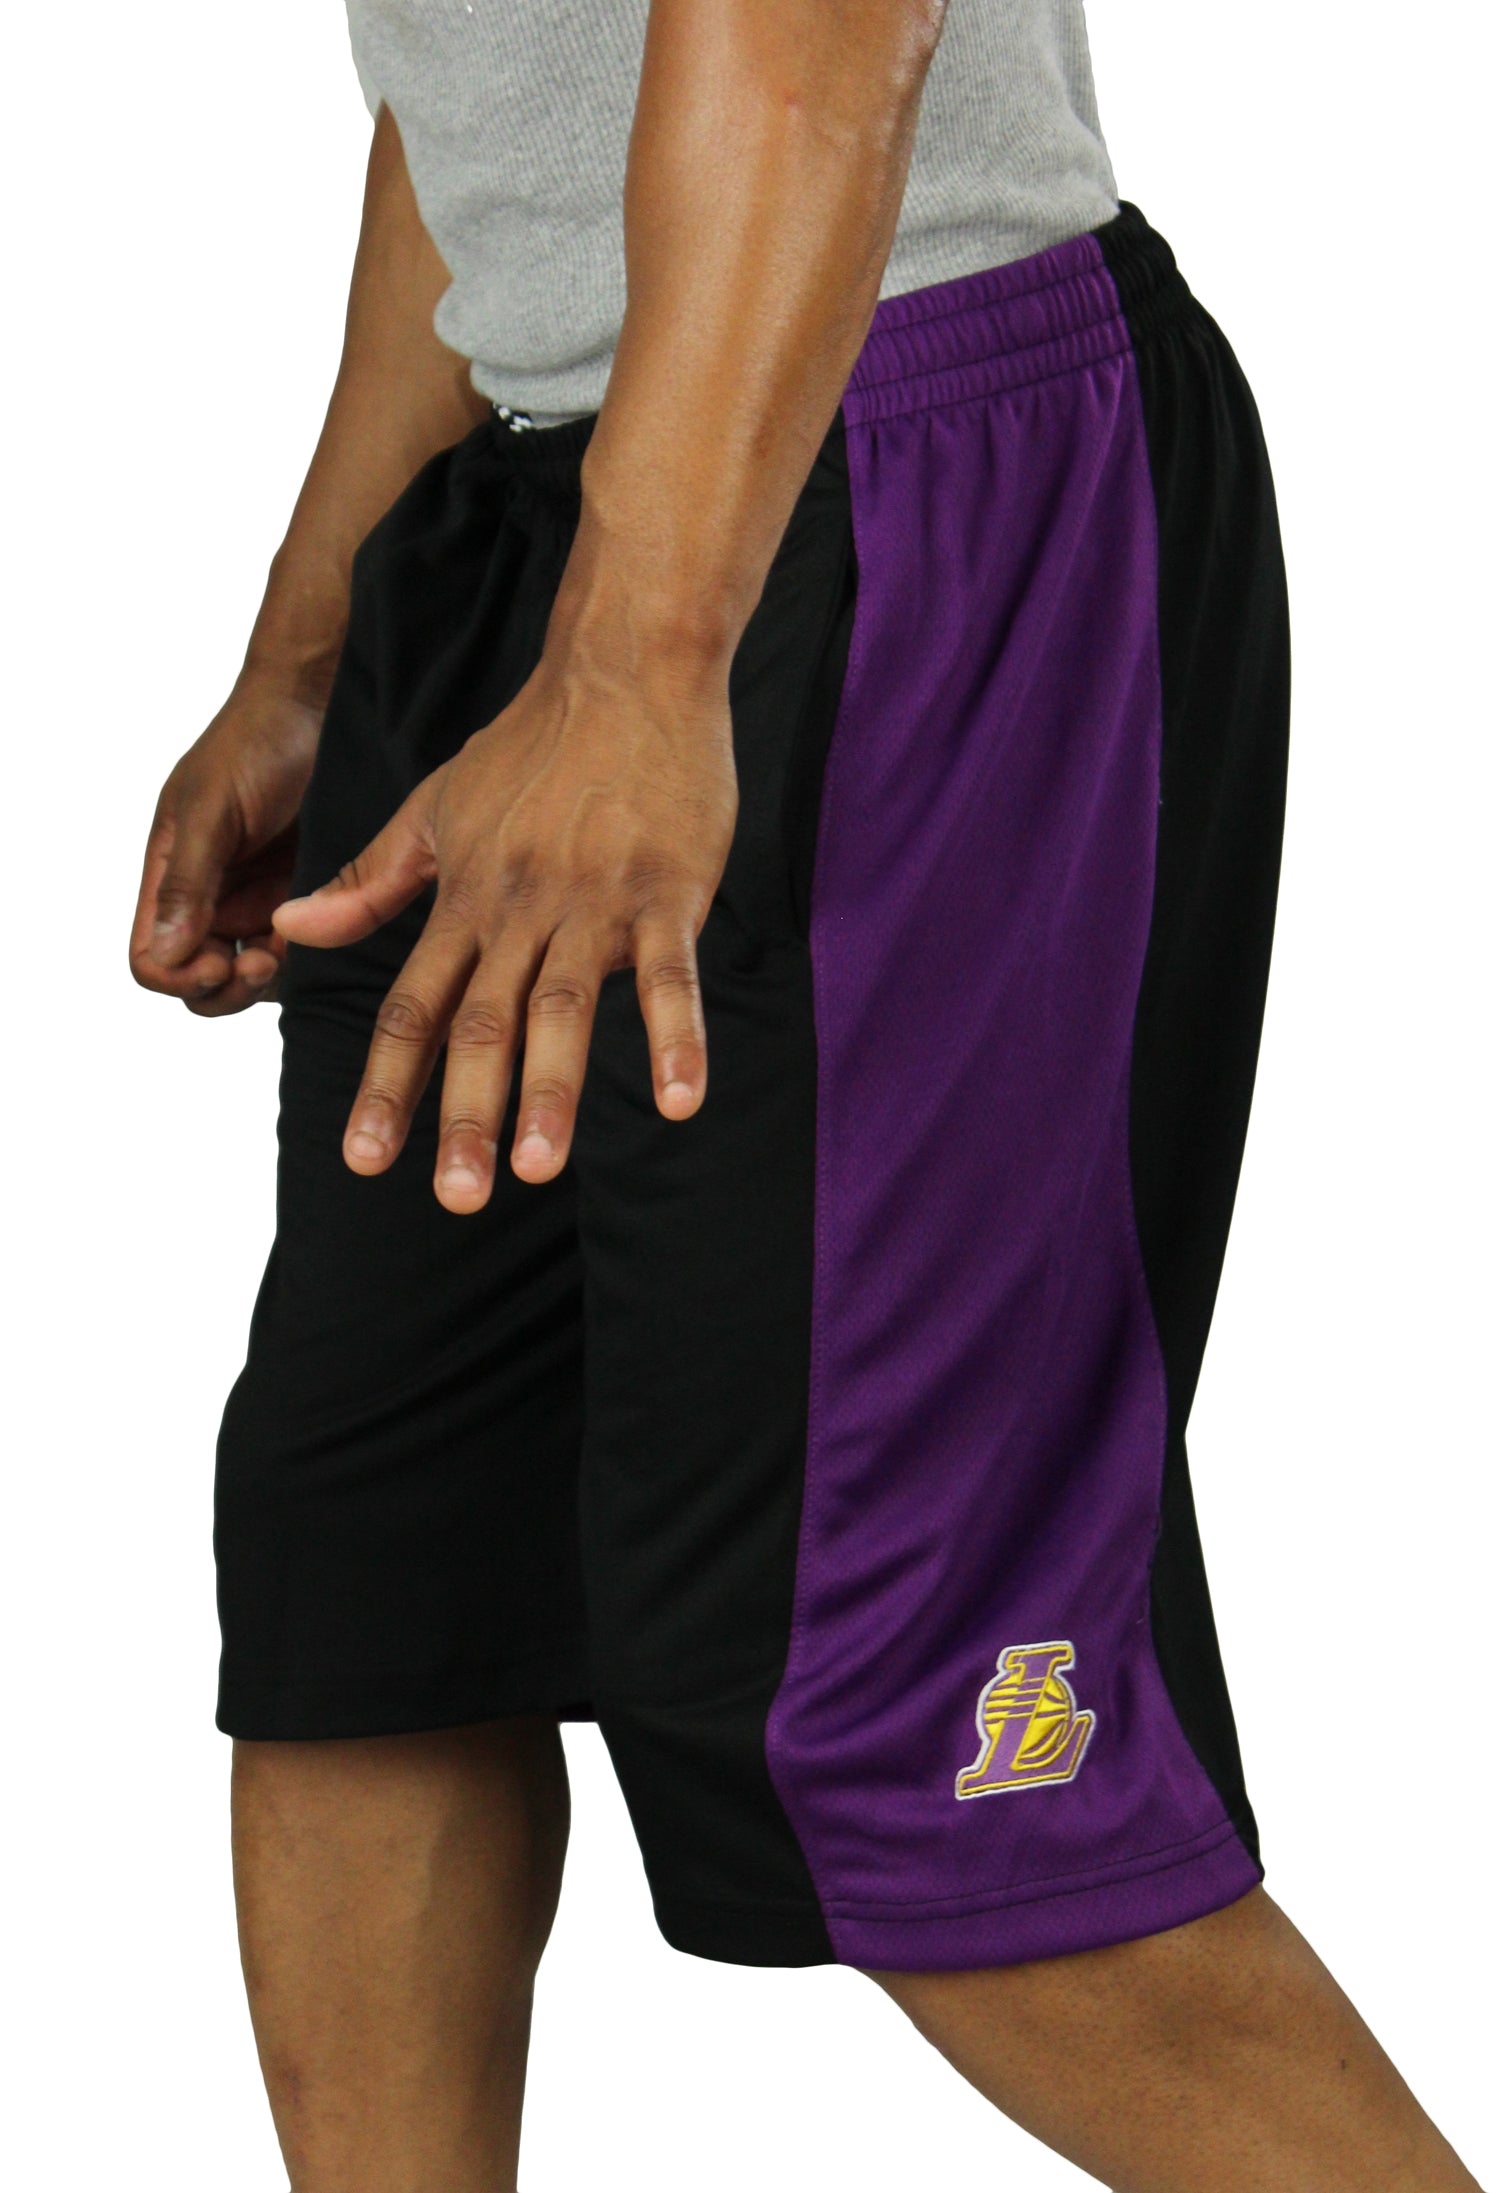 Official Los Angeles Lakers Shorts, Basketball Shorts, Gym Shorts